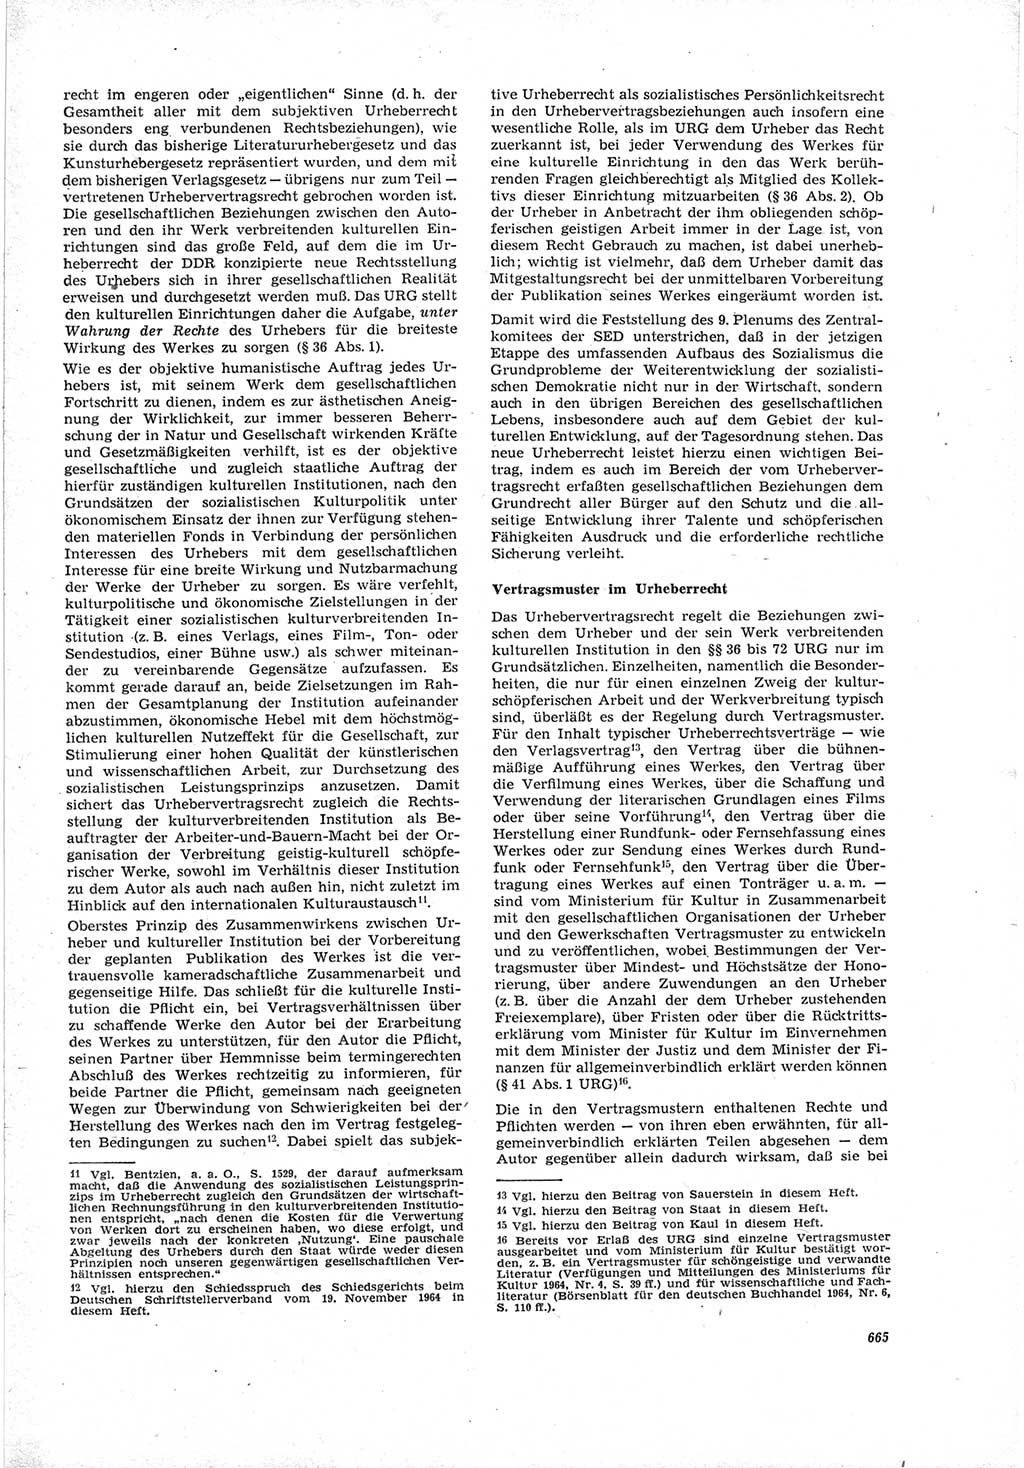 Neue Justiz (NJ), Zeitschrift für Recht und Rechtswissenschaft [Deutsche Demokratische Republik (DDR)], 19. Jahrgang 1965, Seite 665 (NJ DDR 1965, S. 665)